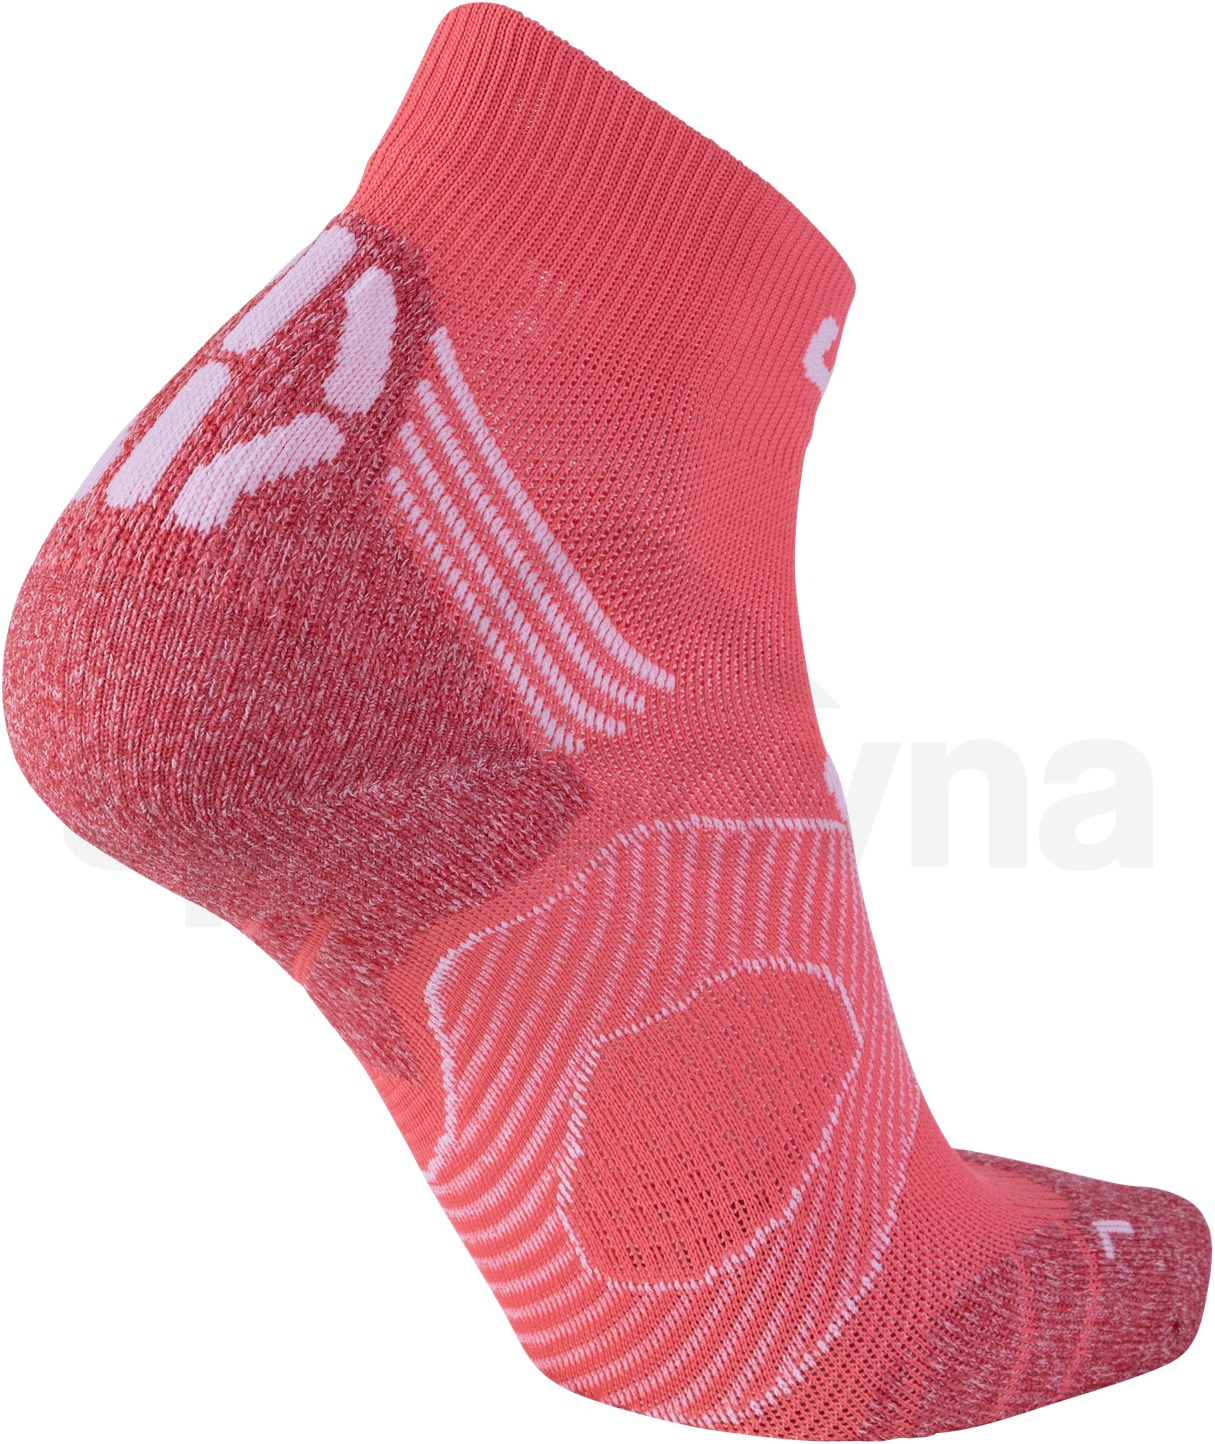 Ponožky UYN LADY RUN SUPER FAST - korálová/bílá